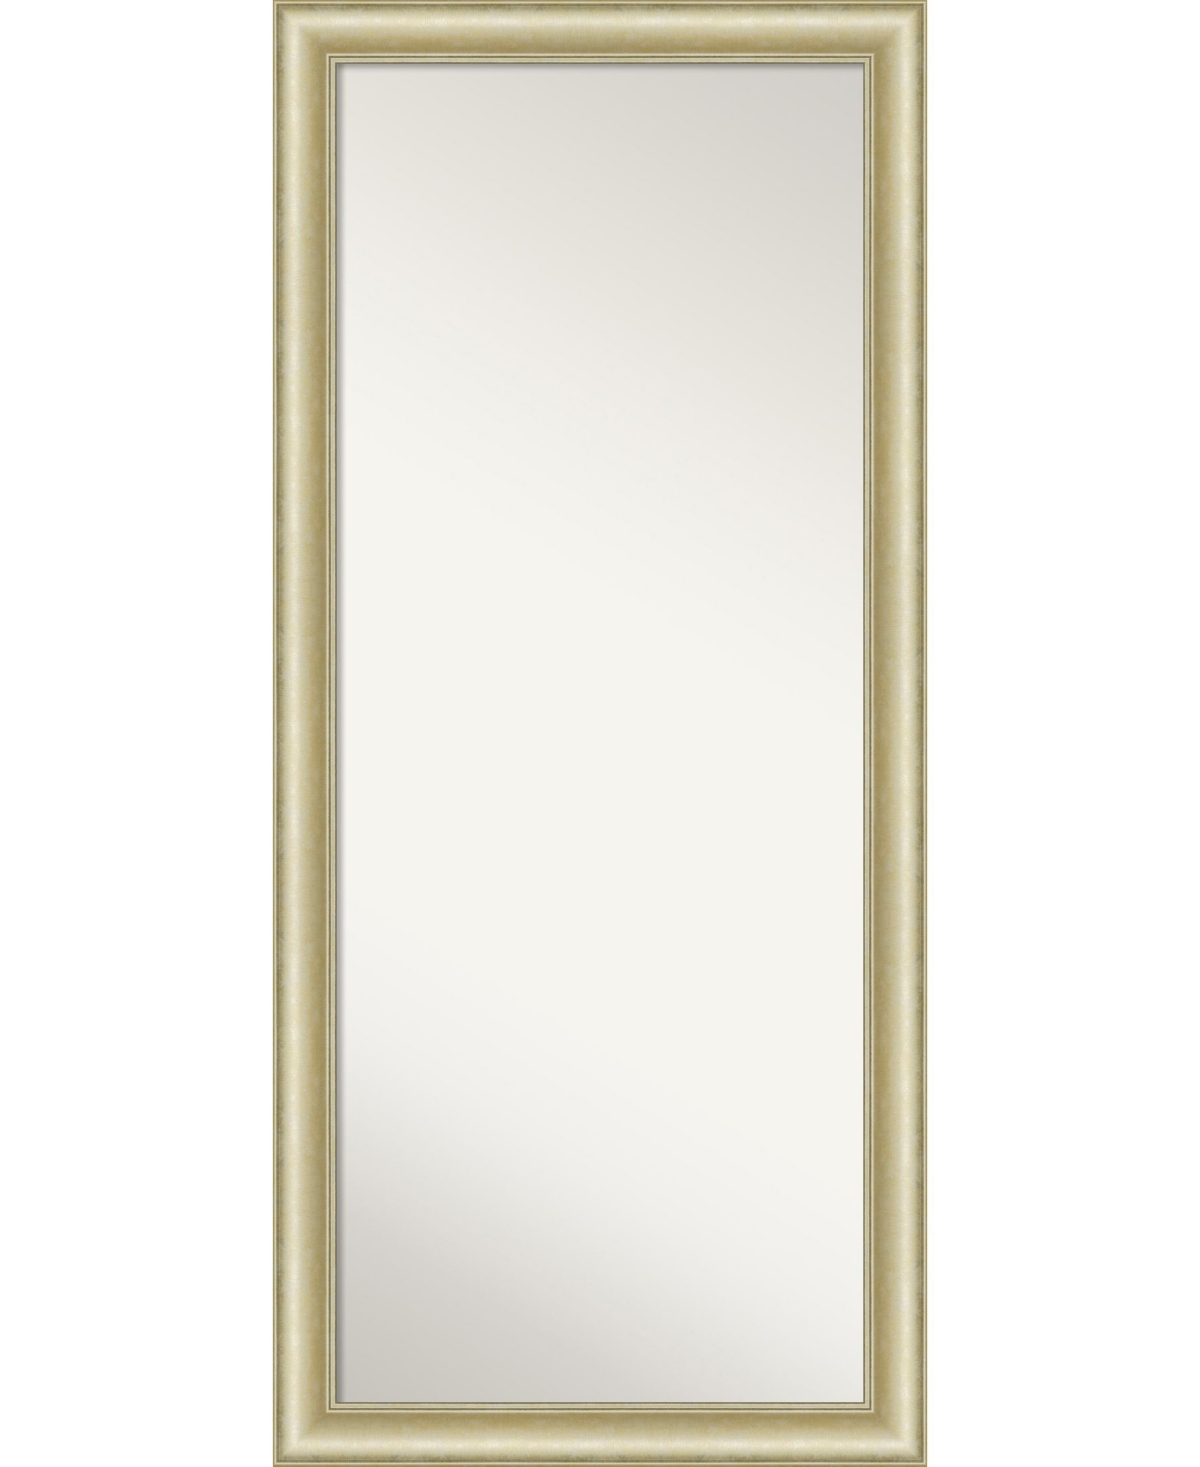 Textured Light Gold-tone Framed Floor/Leaner Full Length Mirror, 29" x 65" - Gold